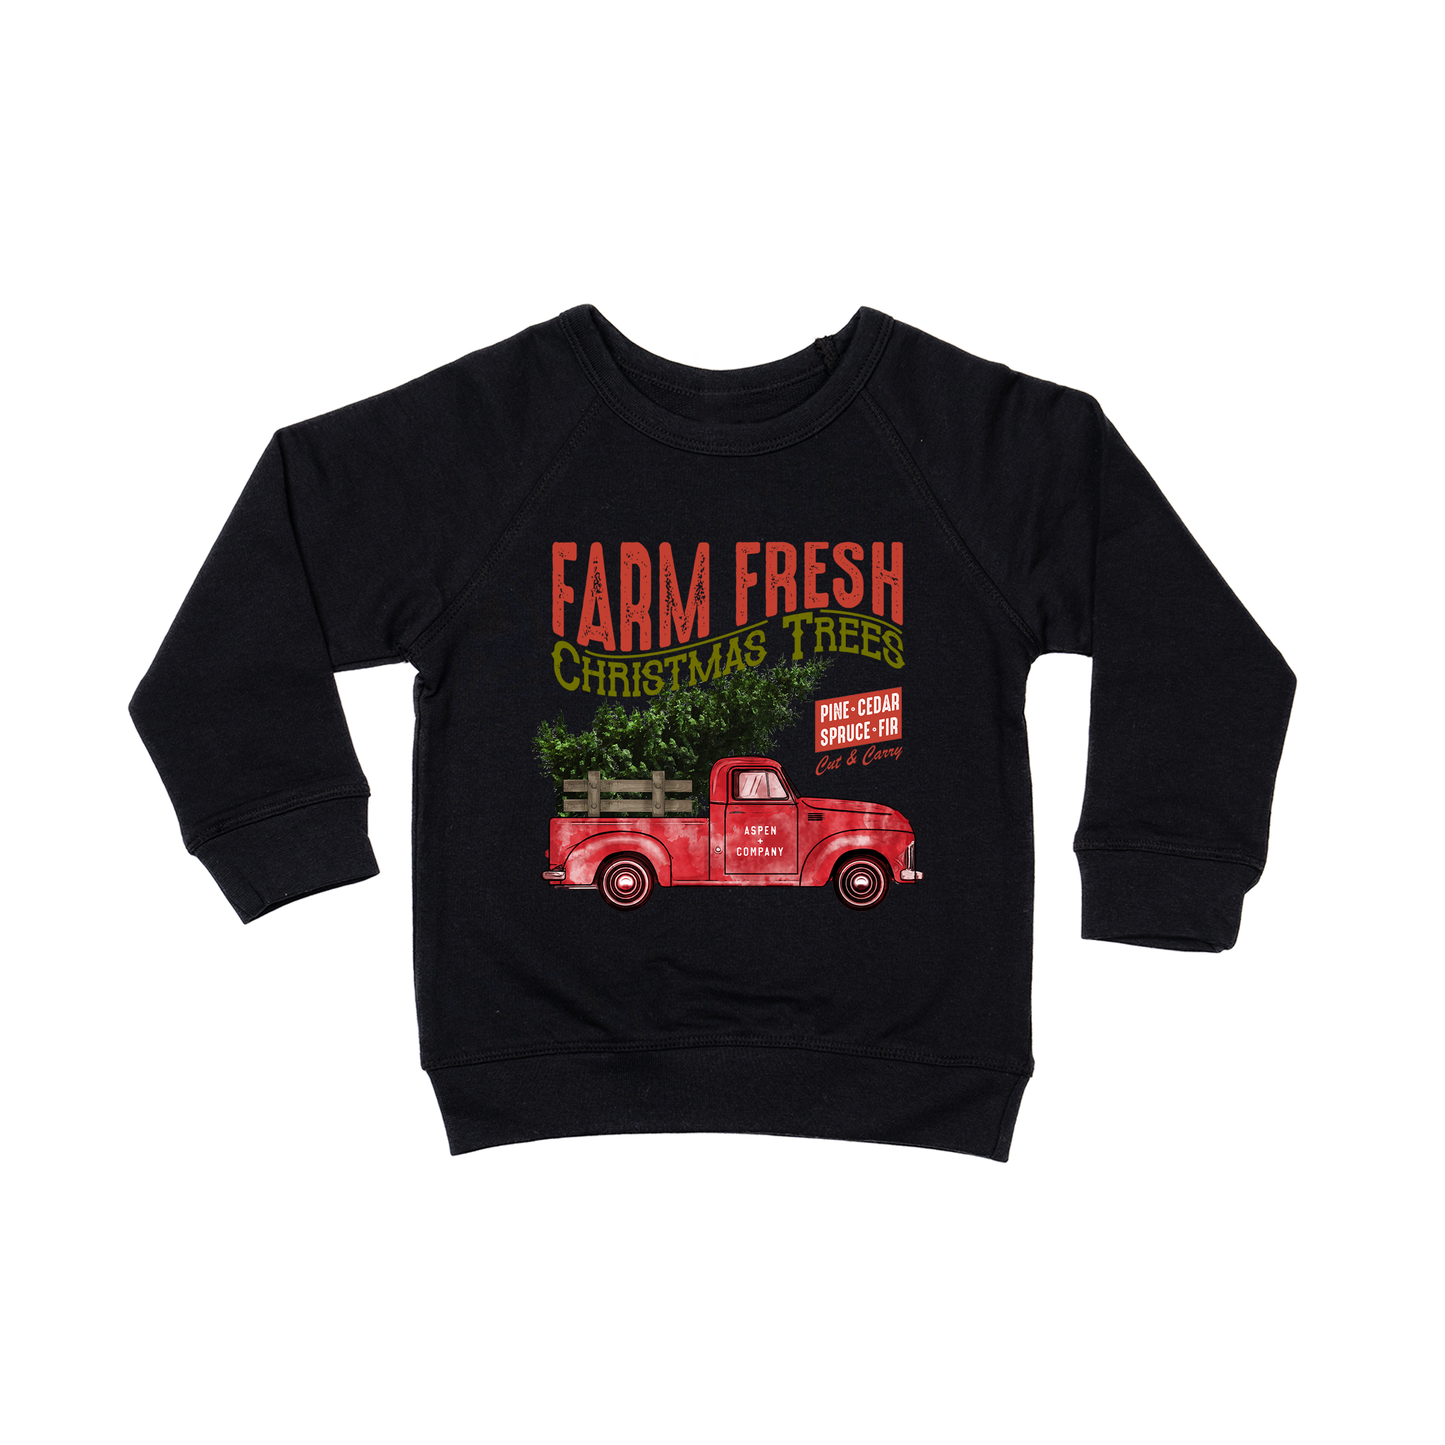 Vintage Farm Fresh Christmas Trees (Truck) - Kids Sweatshirt (Black)